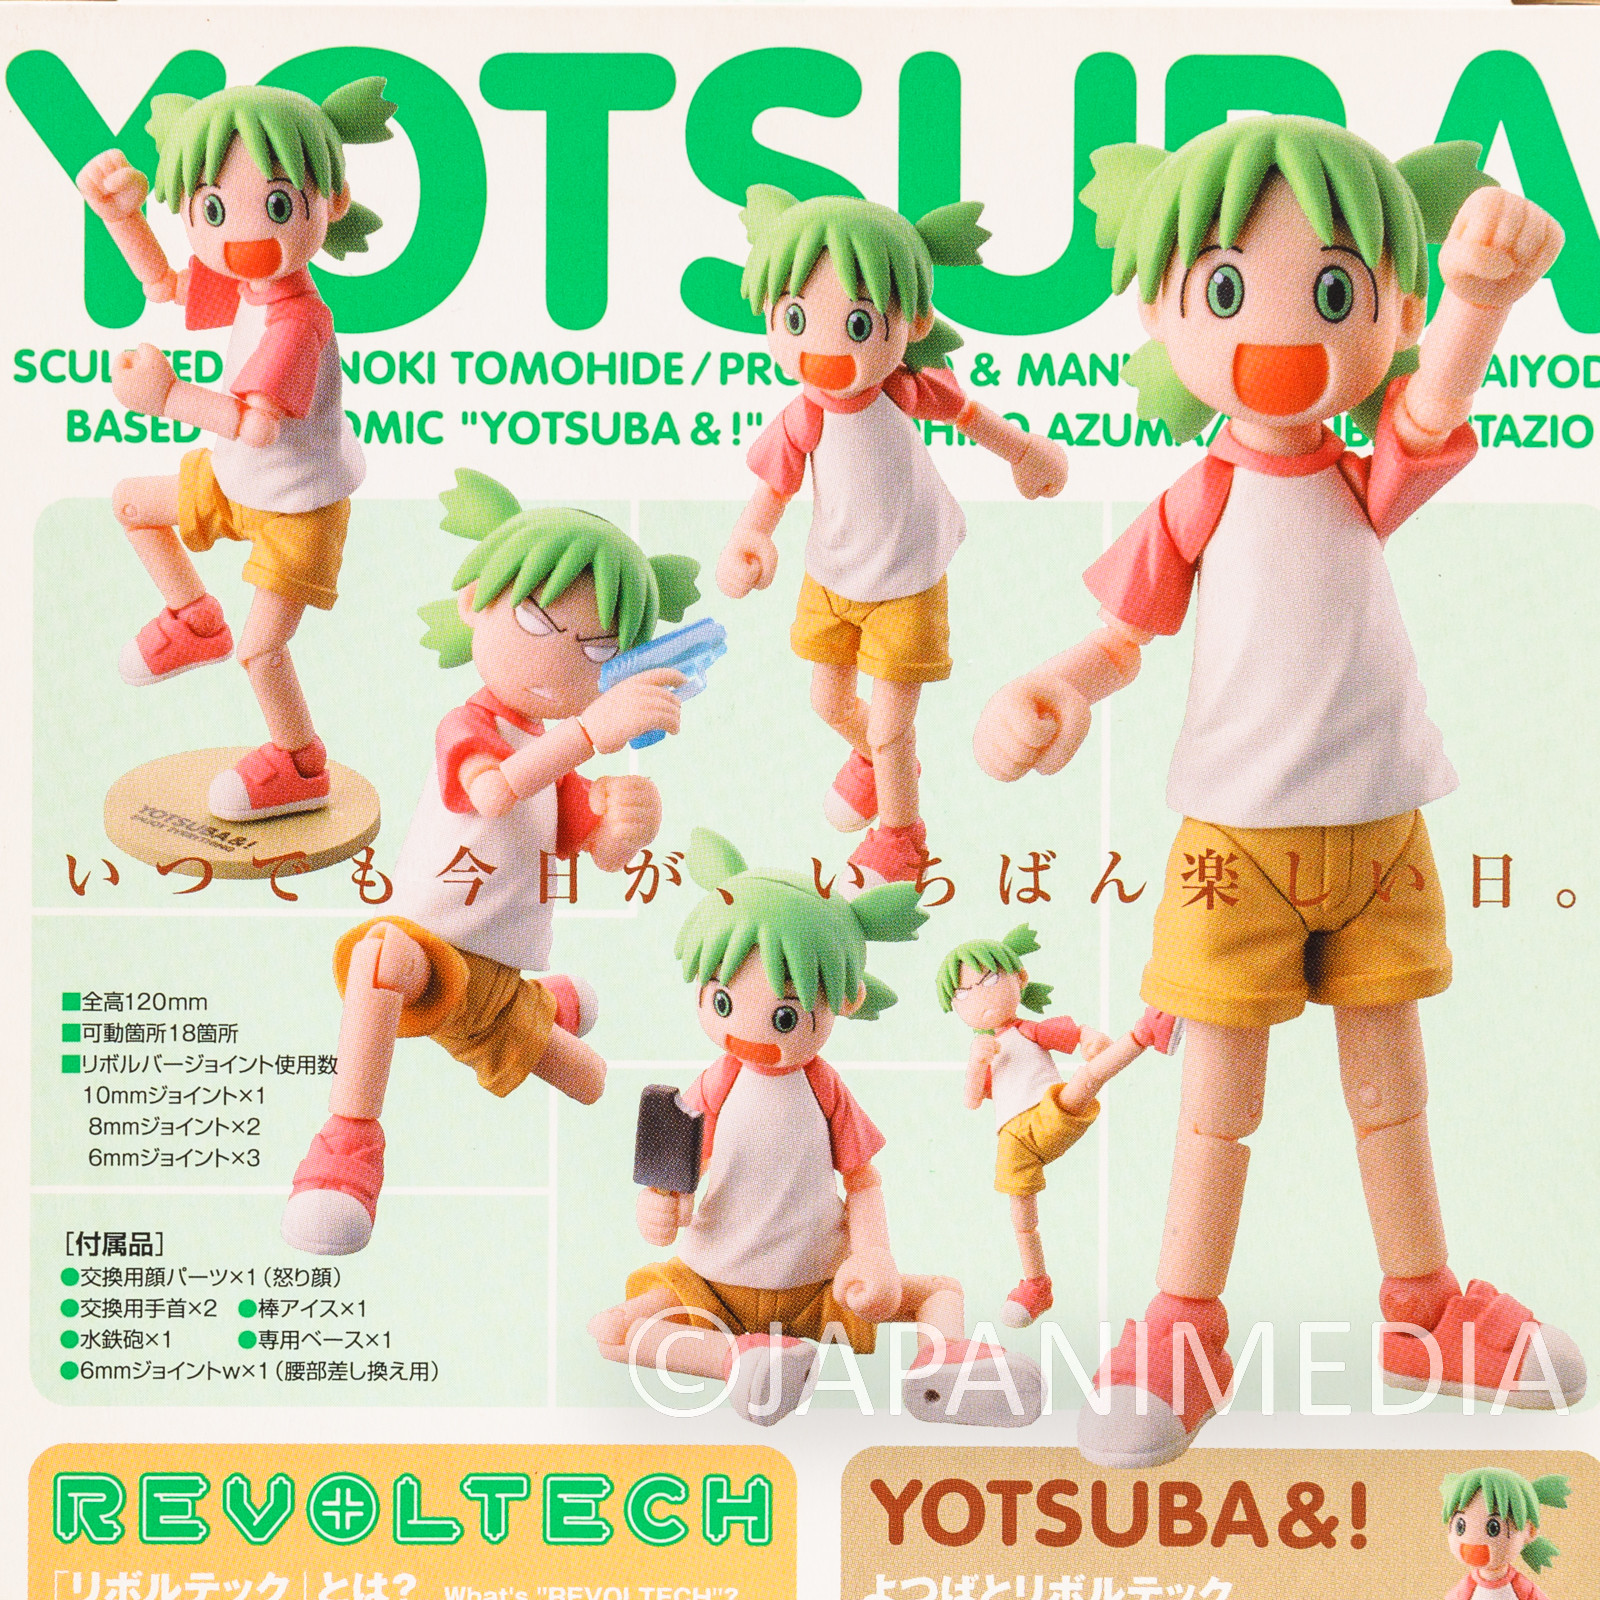 Yotsuba& Yotsuba Action Figure Revoltech KAIYODO